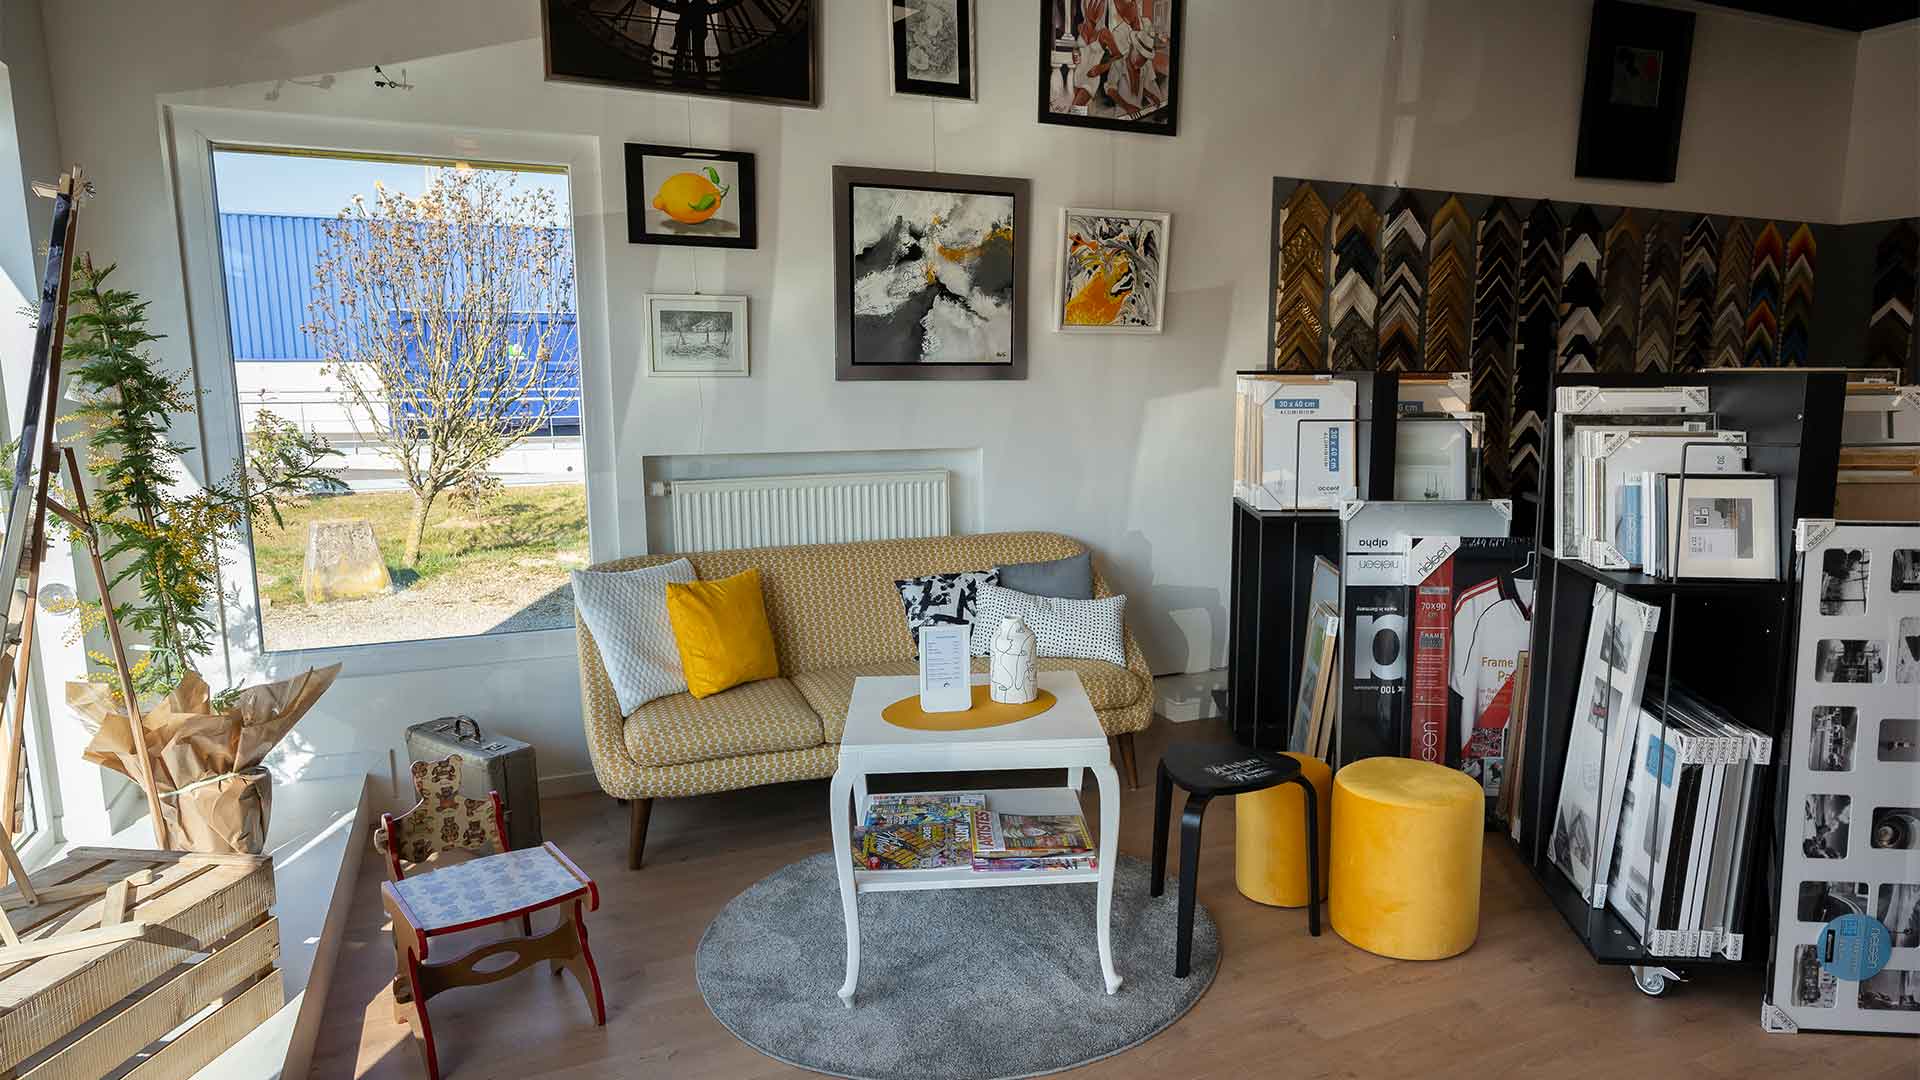 Rixheim : la nouvelle ère de la boutique-atelier “Passion des Arts”, Le coin détente pour rêvasser, bouquiner ou prendre un café